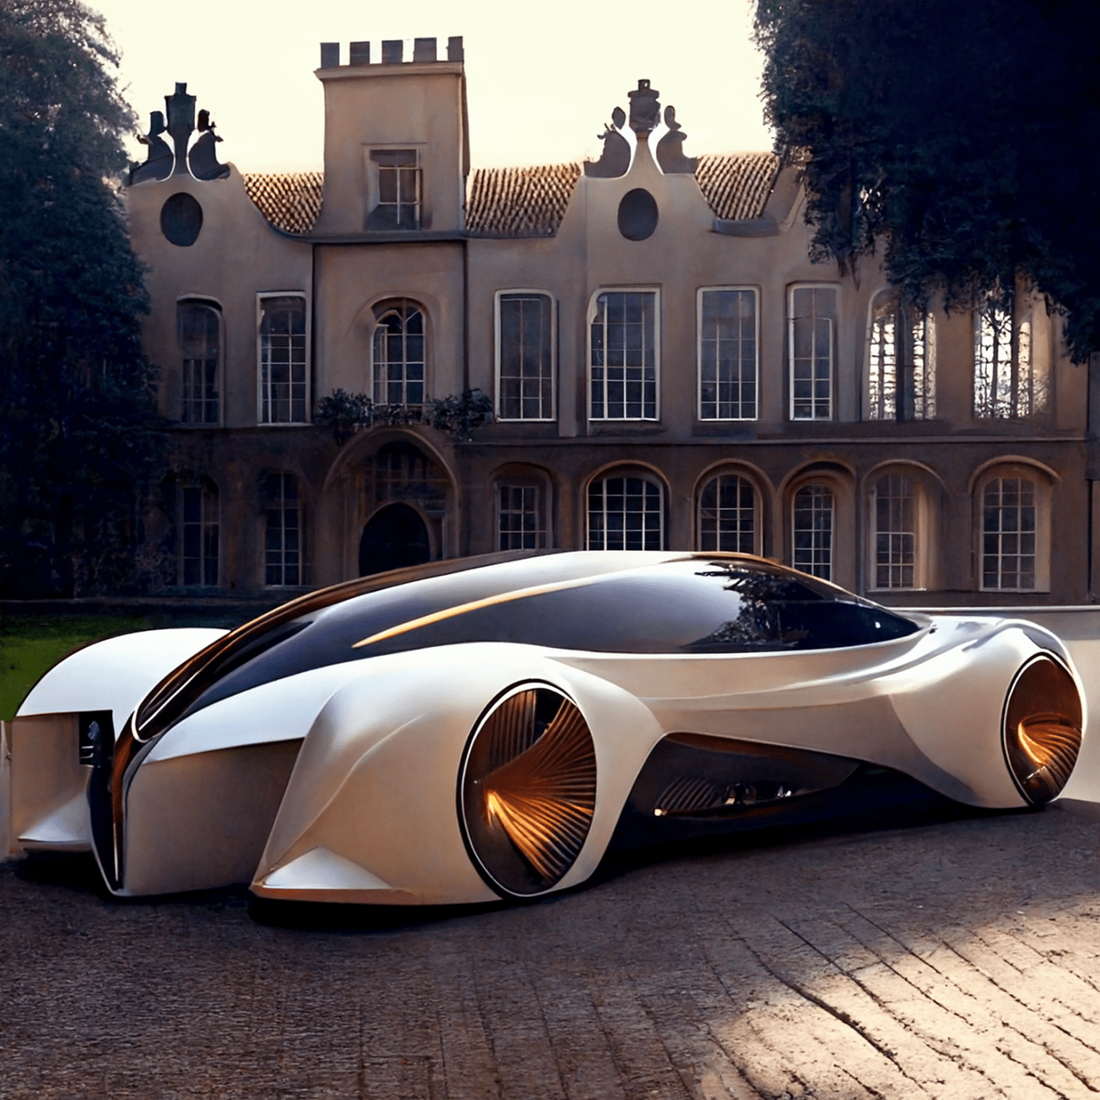 Chùm ảnh trí tuệ nhân tạo thiết kế ô tô mô phỏng các công trình kiến trúc độc đáo - Ảnh 9.